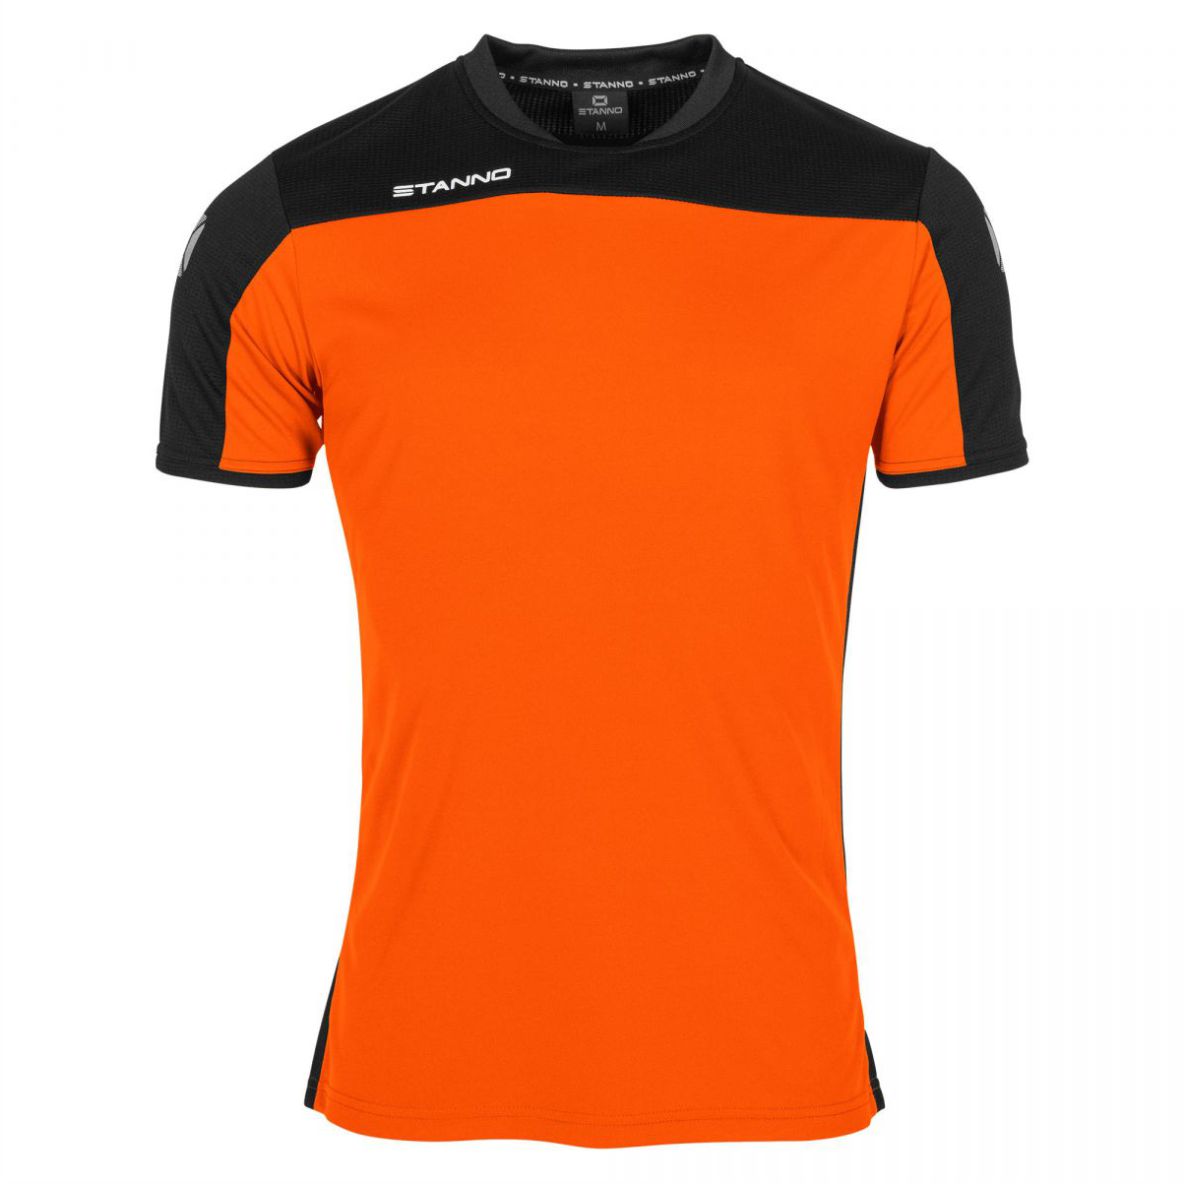 Stanno - Pride Shirt - Orange & Black - Junior